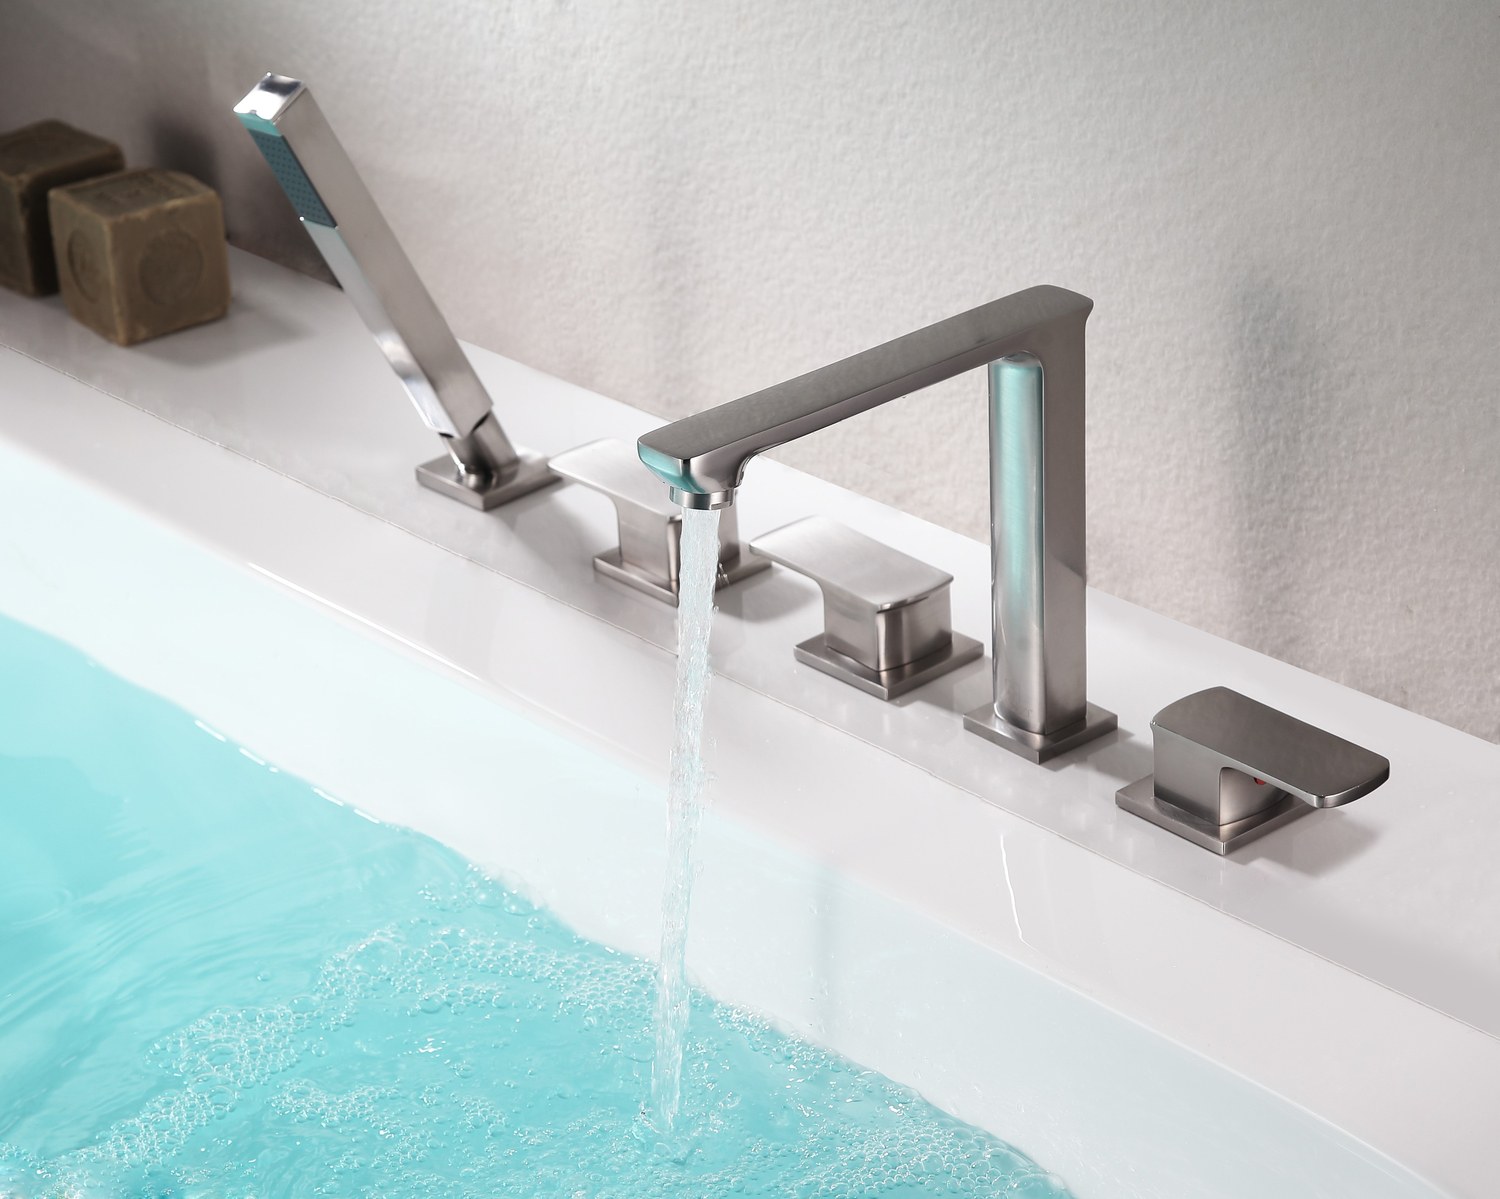 bathroom faucet knob Anzzi BATHROOM - Faucets - Bathtub Faucets - Deck Mounted Nickel